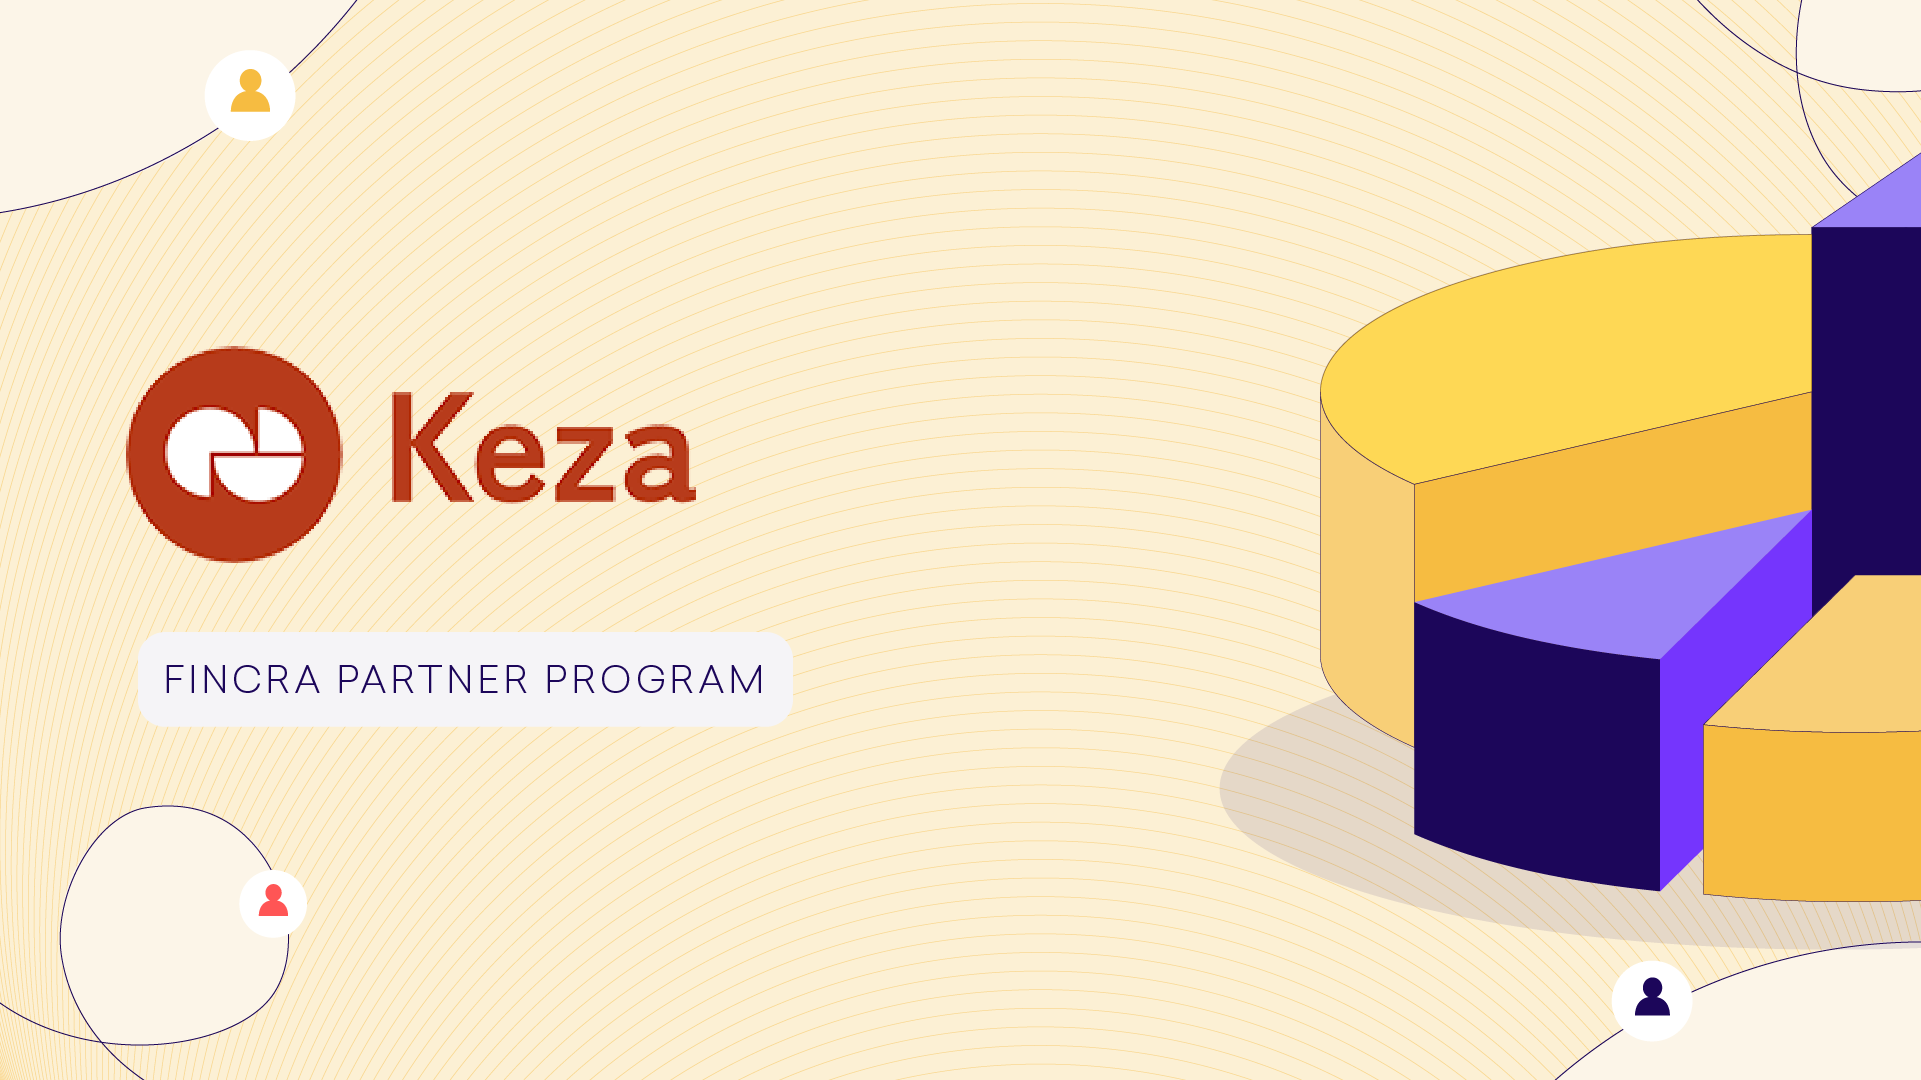 Fincra Partner Program: Keza Africa as a Perk Partner